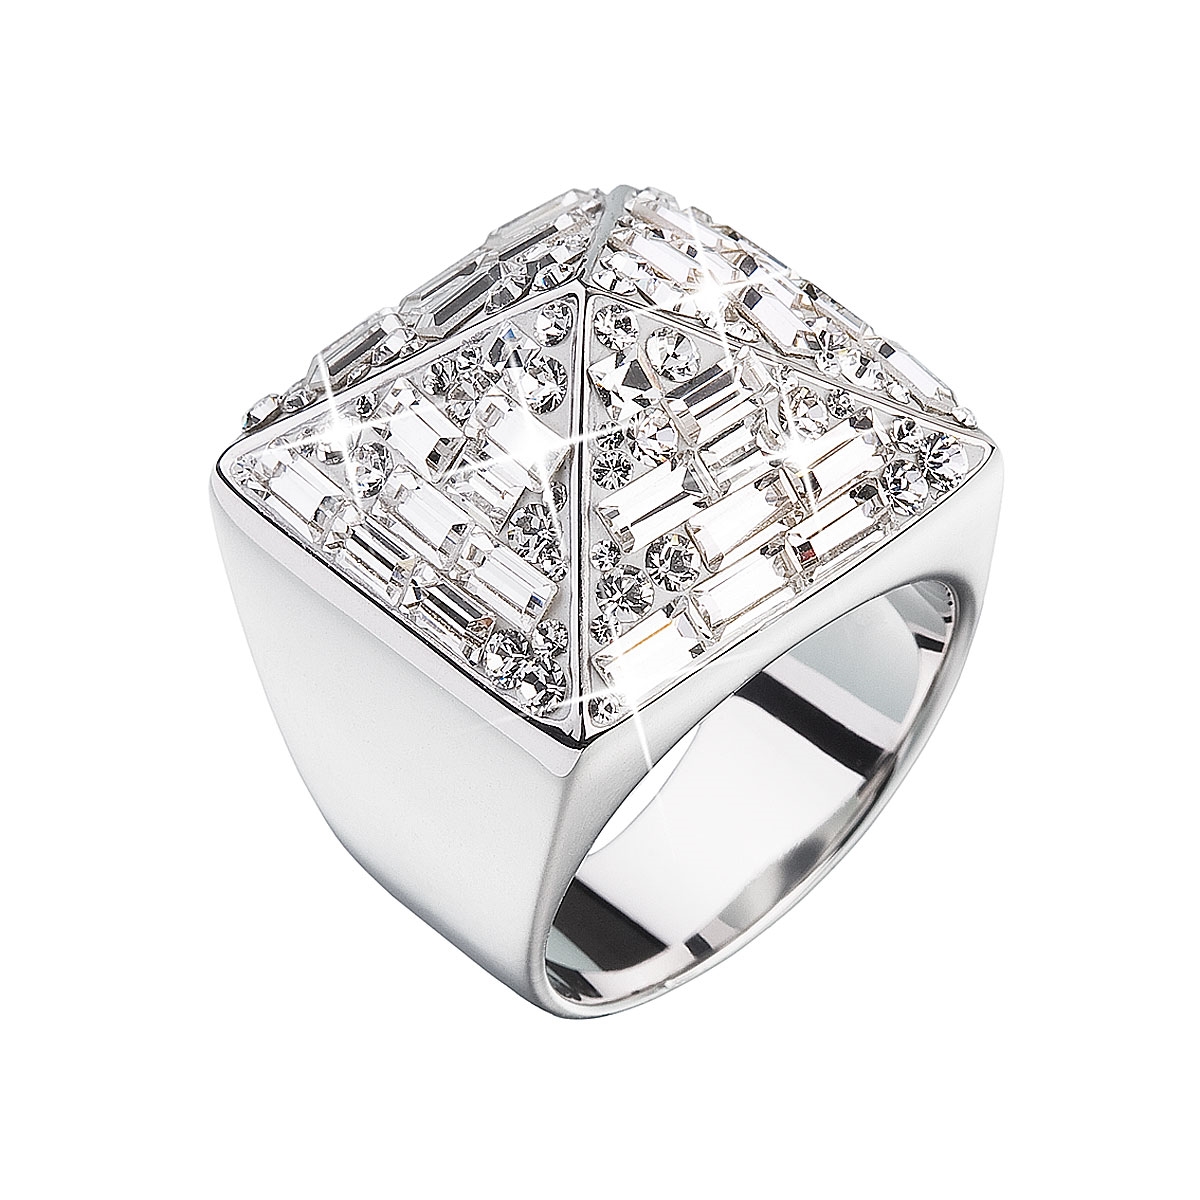 Strieborný prsteň s kameňmi Crystals from Swarovski ®